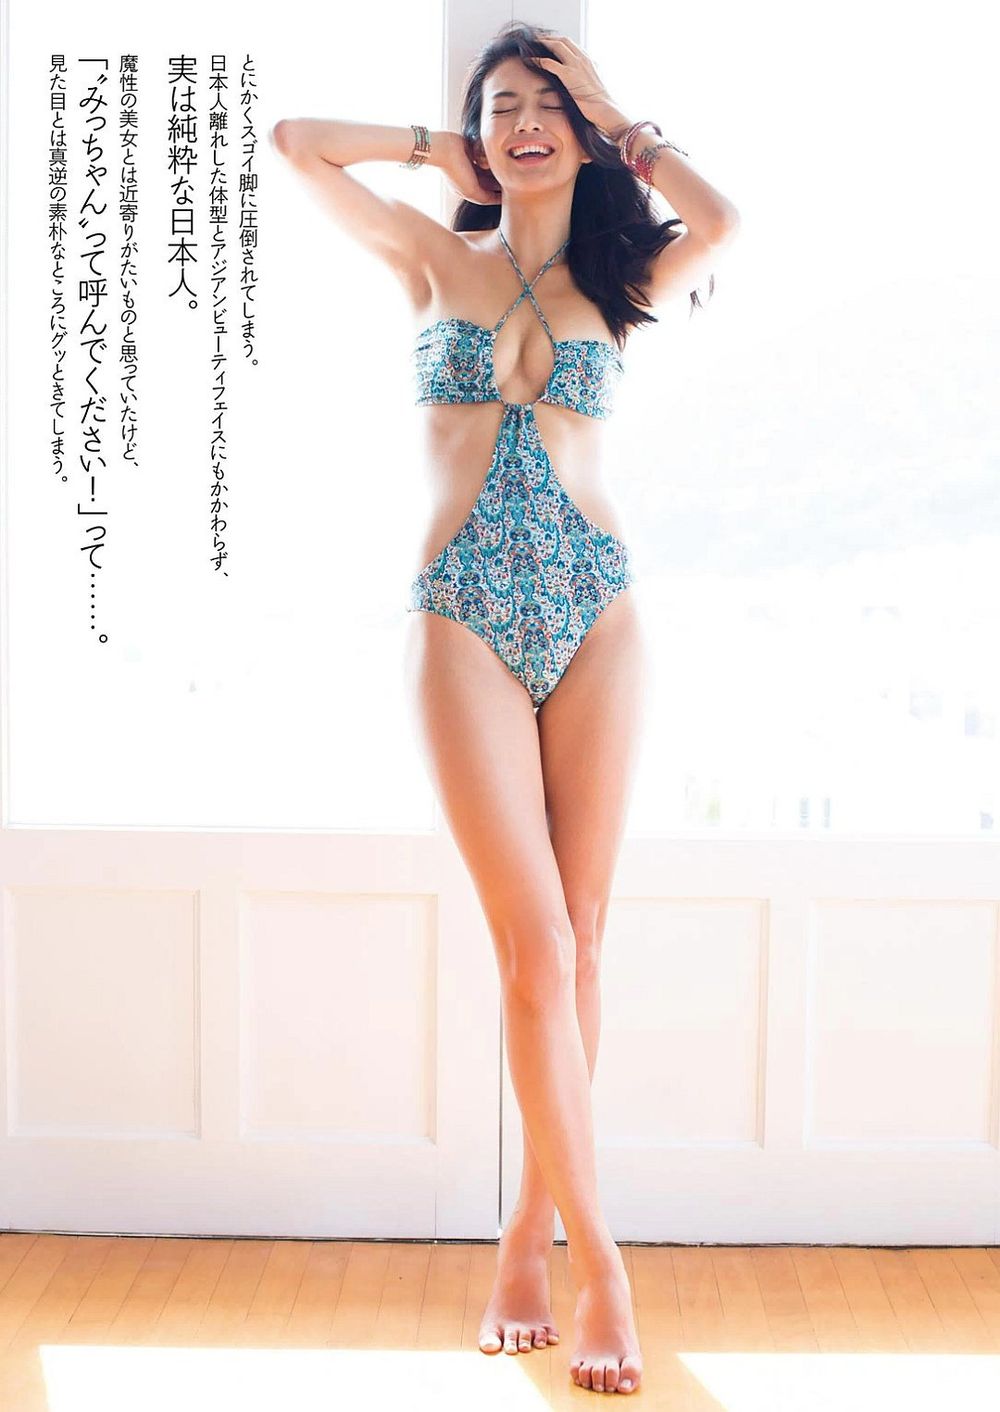 Tanaka Michiko Magical 9 Head Beauty Thigh Beauty